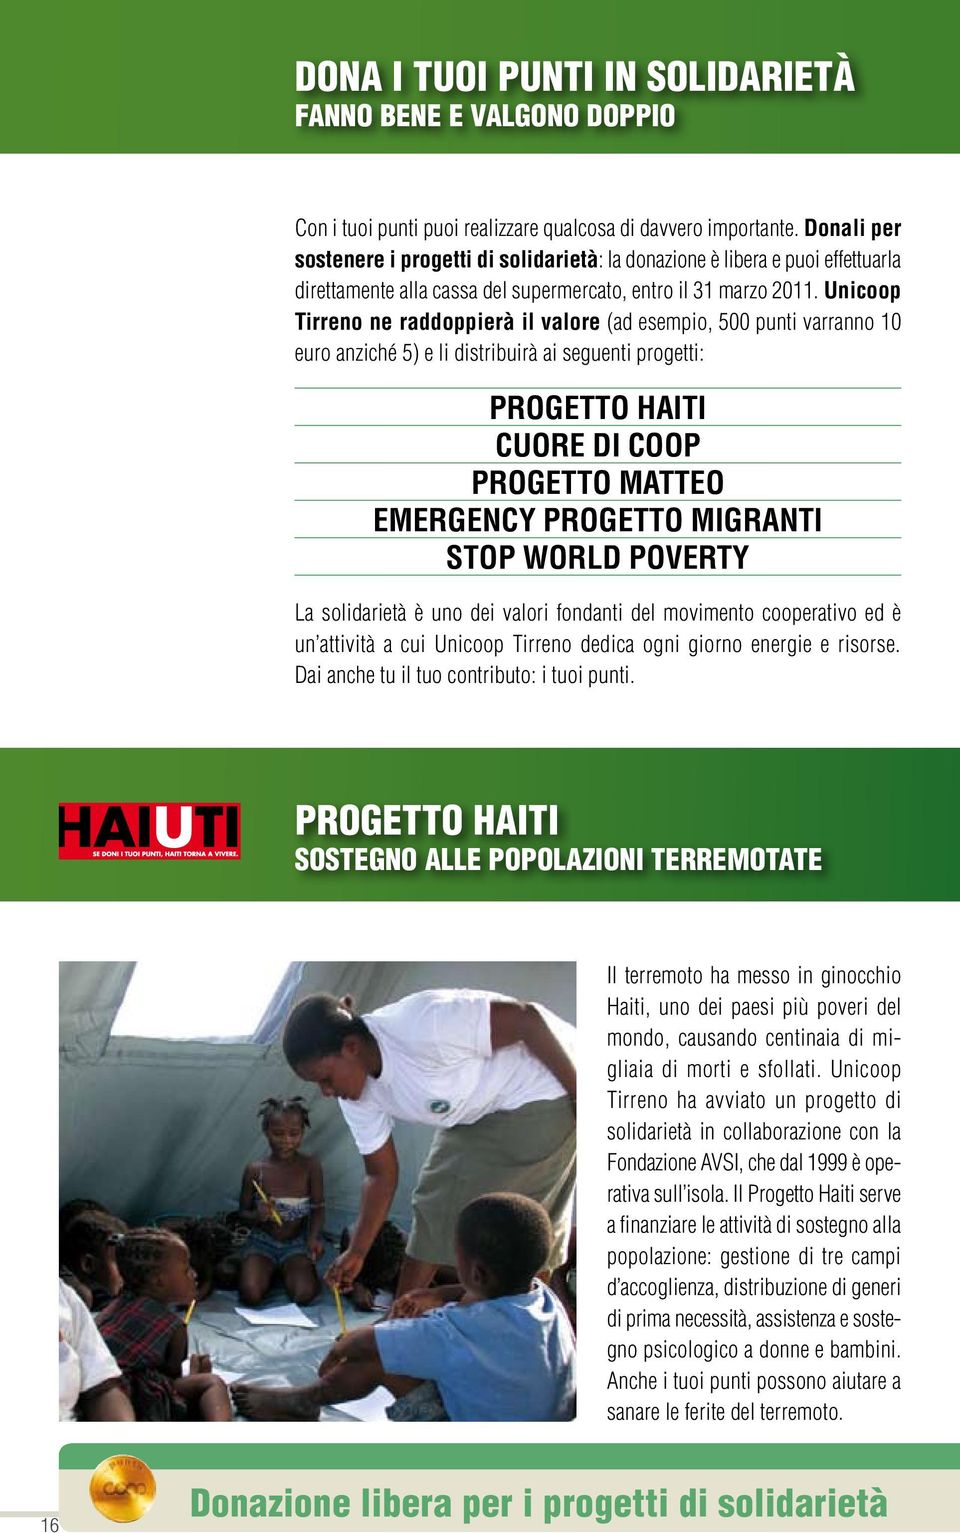 Unicoop Tirreno ne raddoppierà il valore (ad esempio, 500 punti varranno 10 euro anziché 5) e li distribuirà ai seguenti progetti: Progetto Haiti Cuore di Coop Progetto Matteo Emergency Progetto